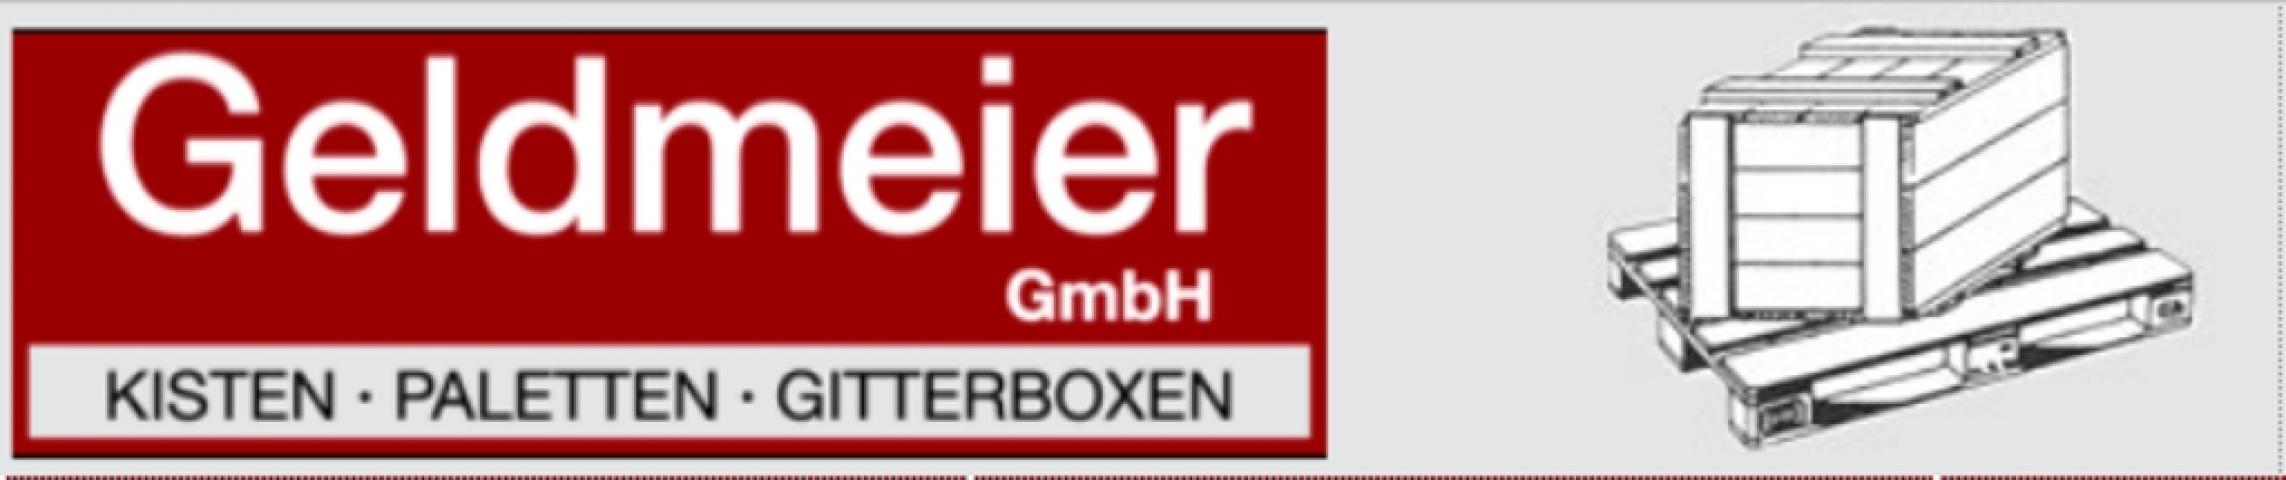 Fotos - Geldmeier GmbH Kisten + Paletten - 2